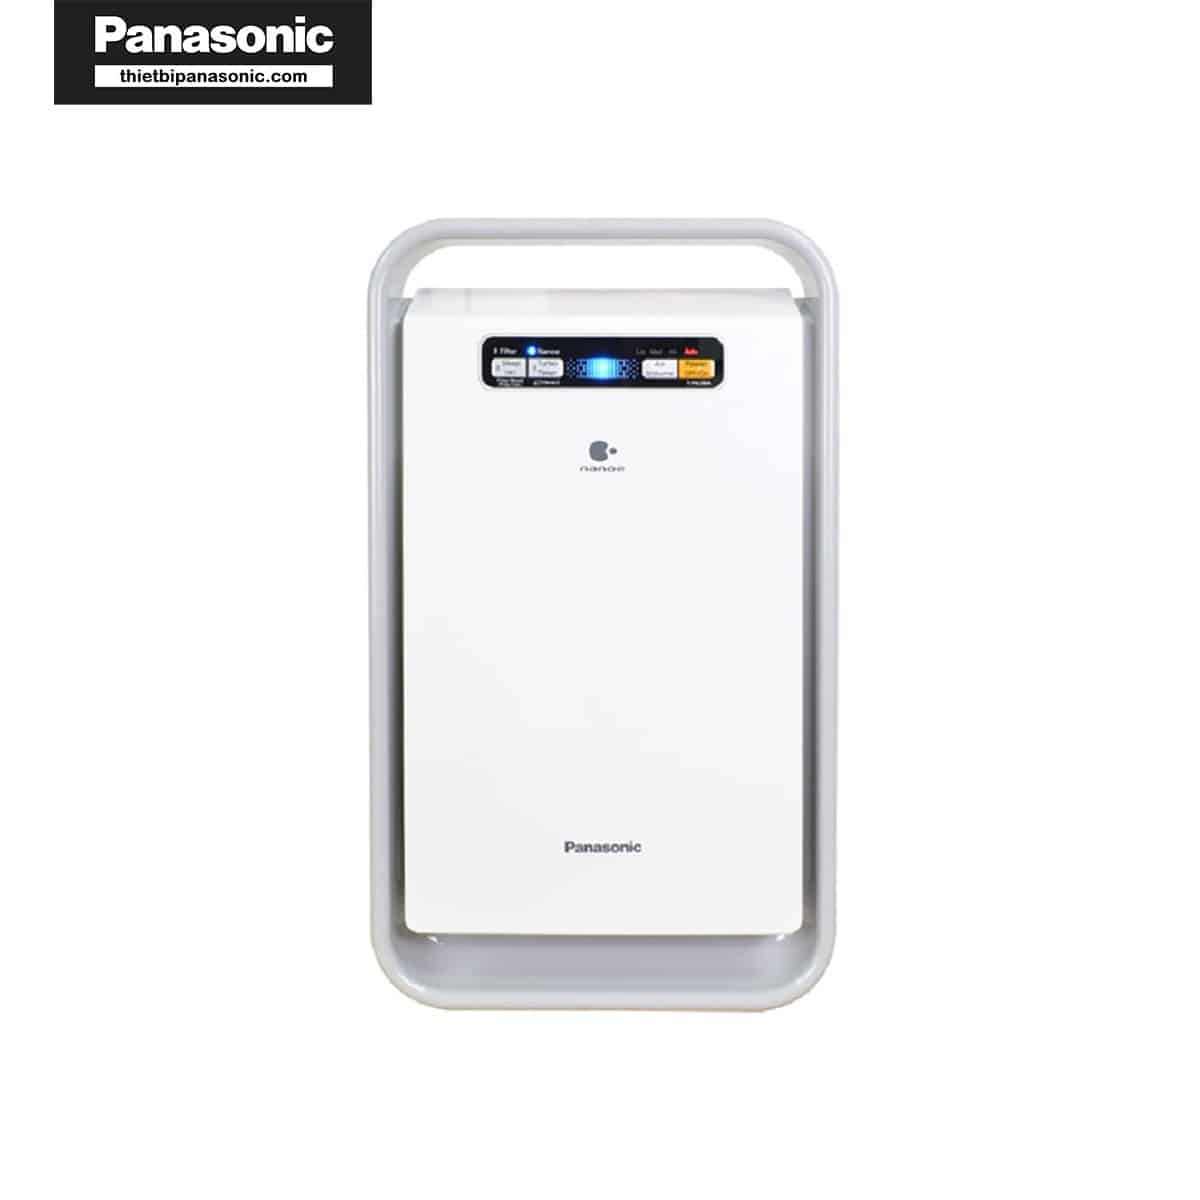 Máy lọc không khí Panasonic F-PXJ30 sử dụng tốt với màng lọc khử mùi Panasonic